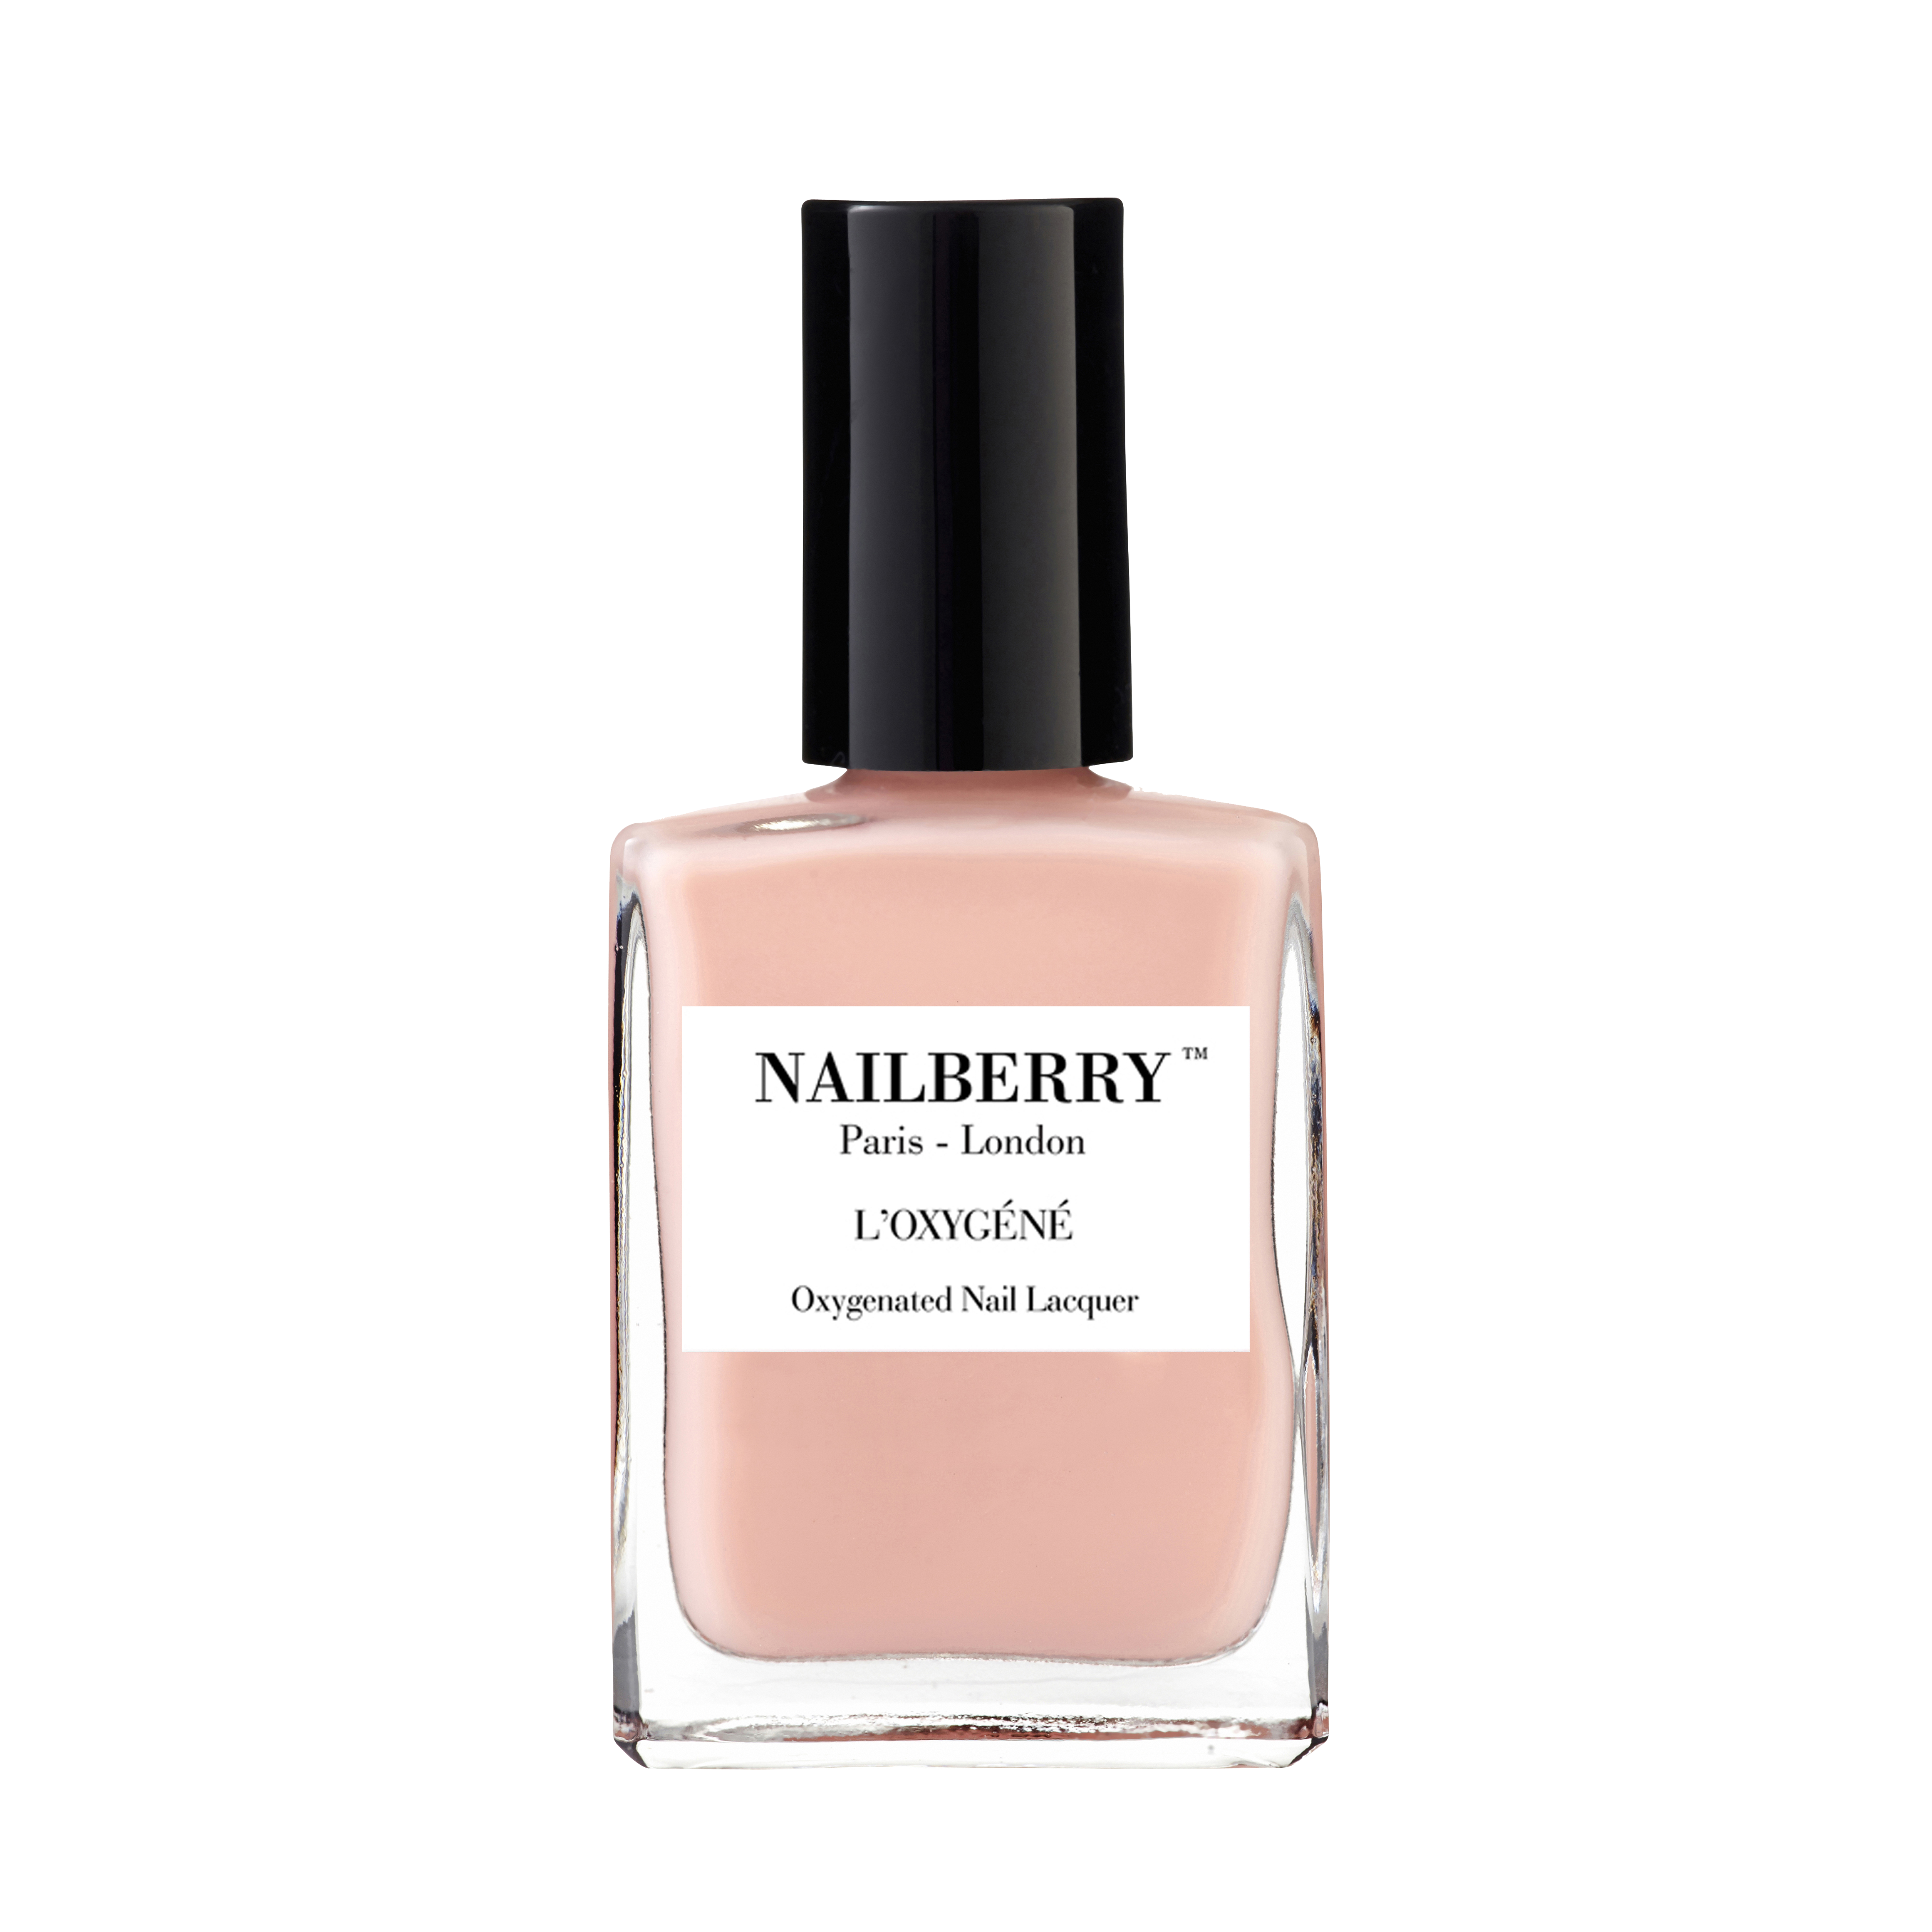 NAILBERRY Nail polish (A TOUCH OF POWDER)